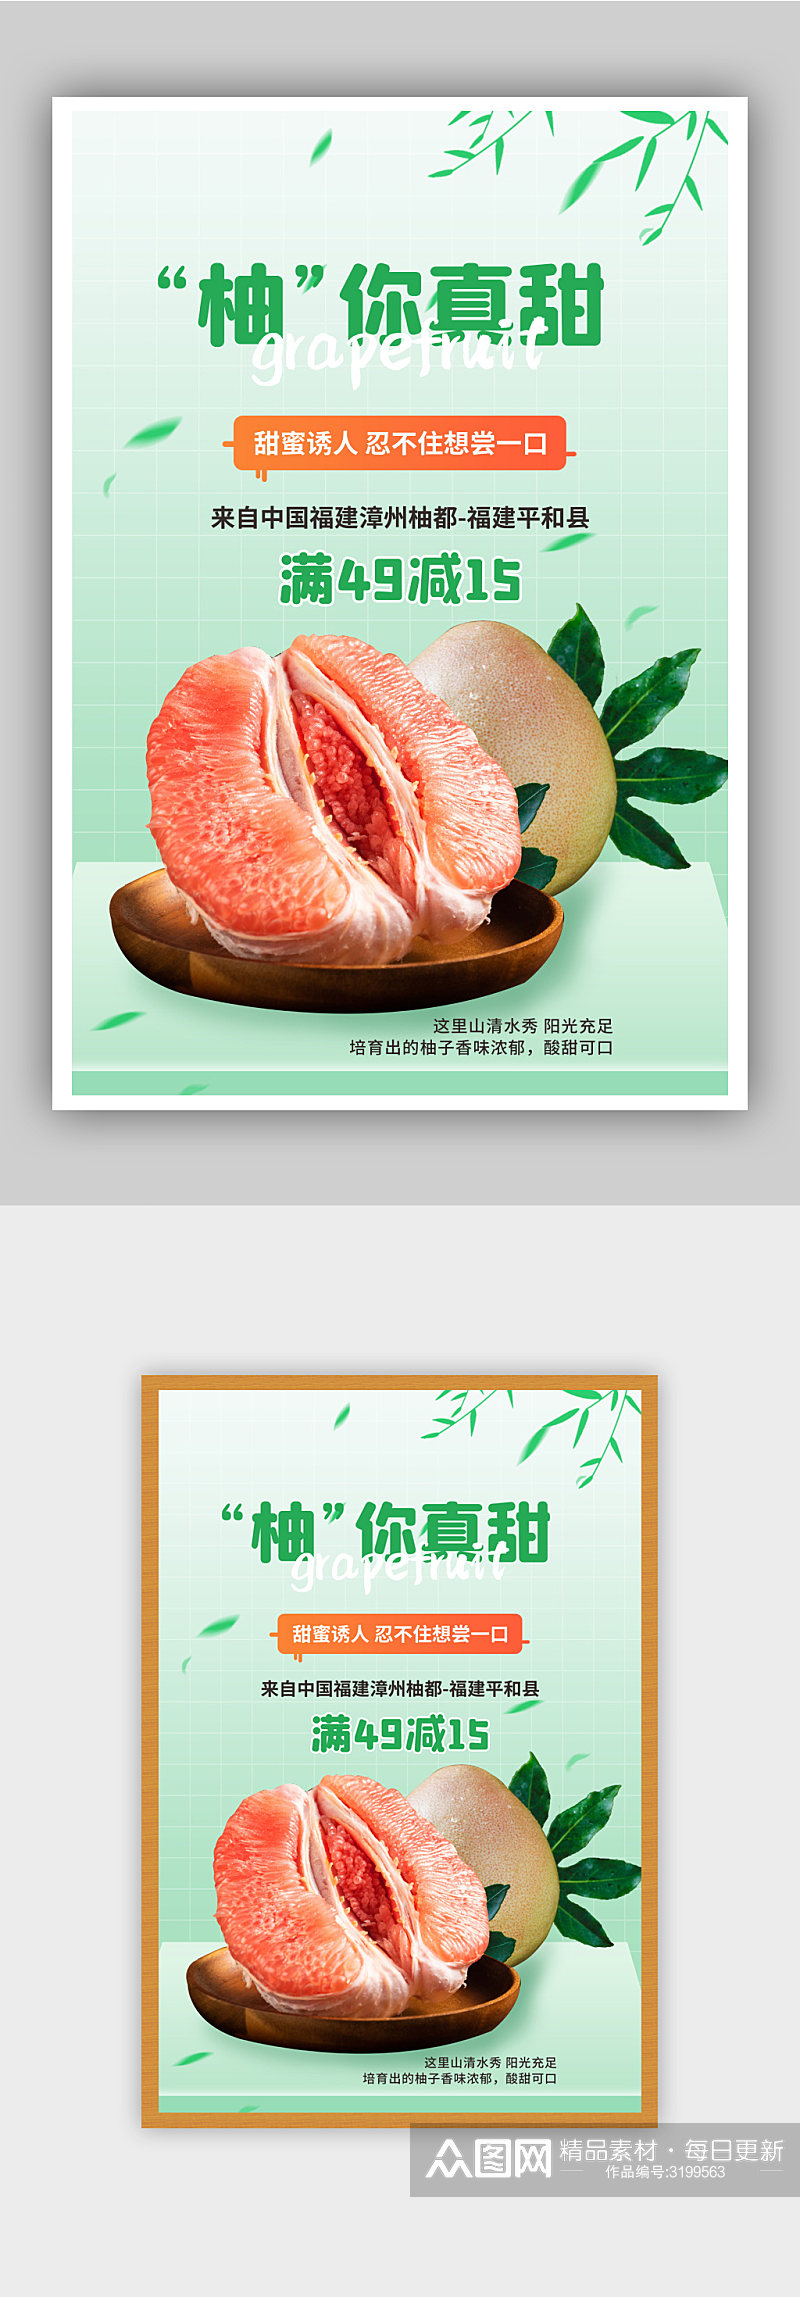 水果红心柚子上市促销宣传海报素材